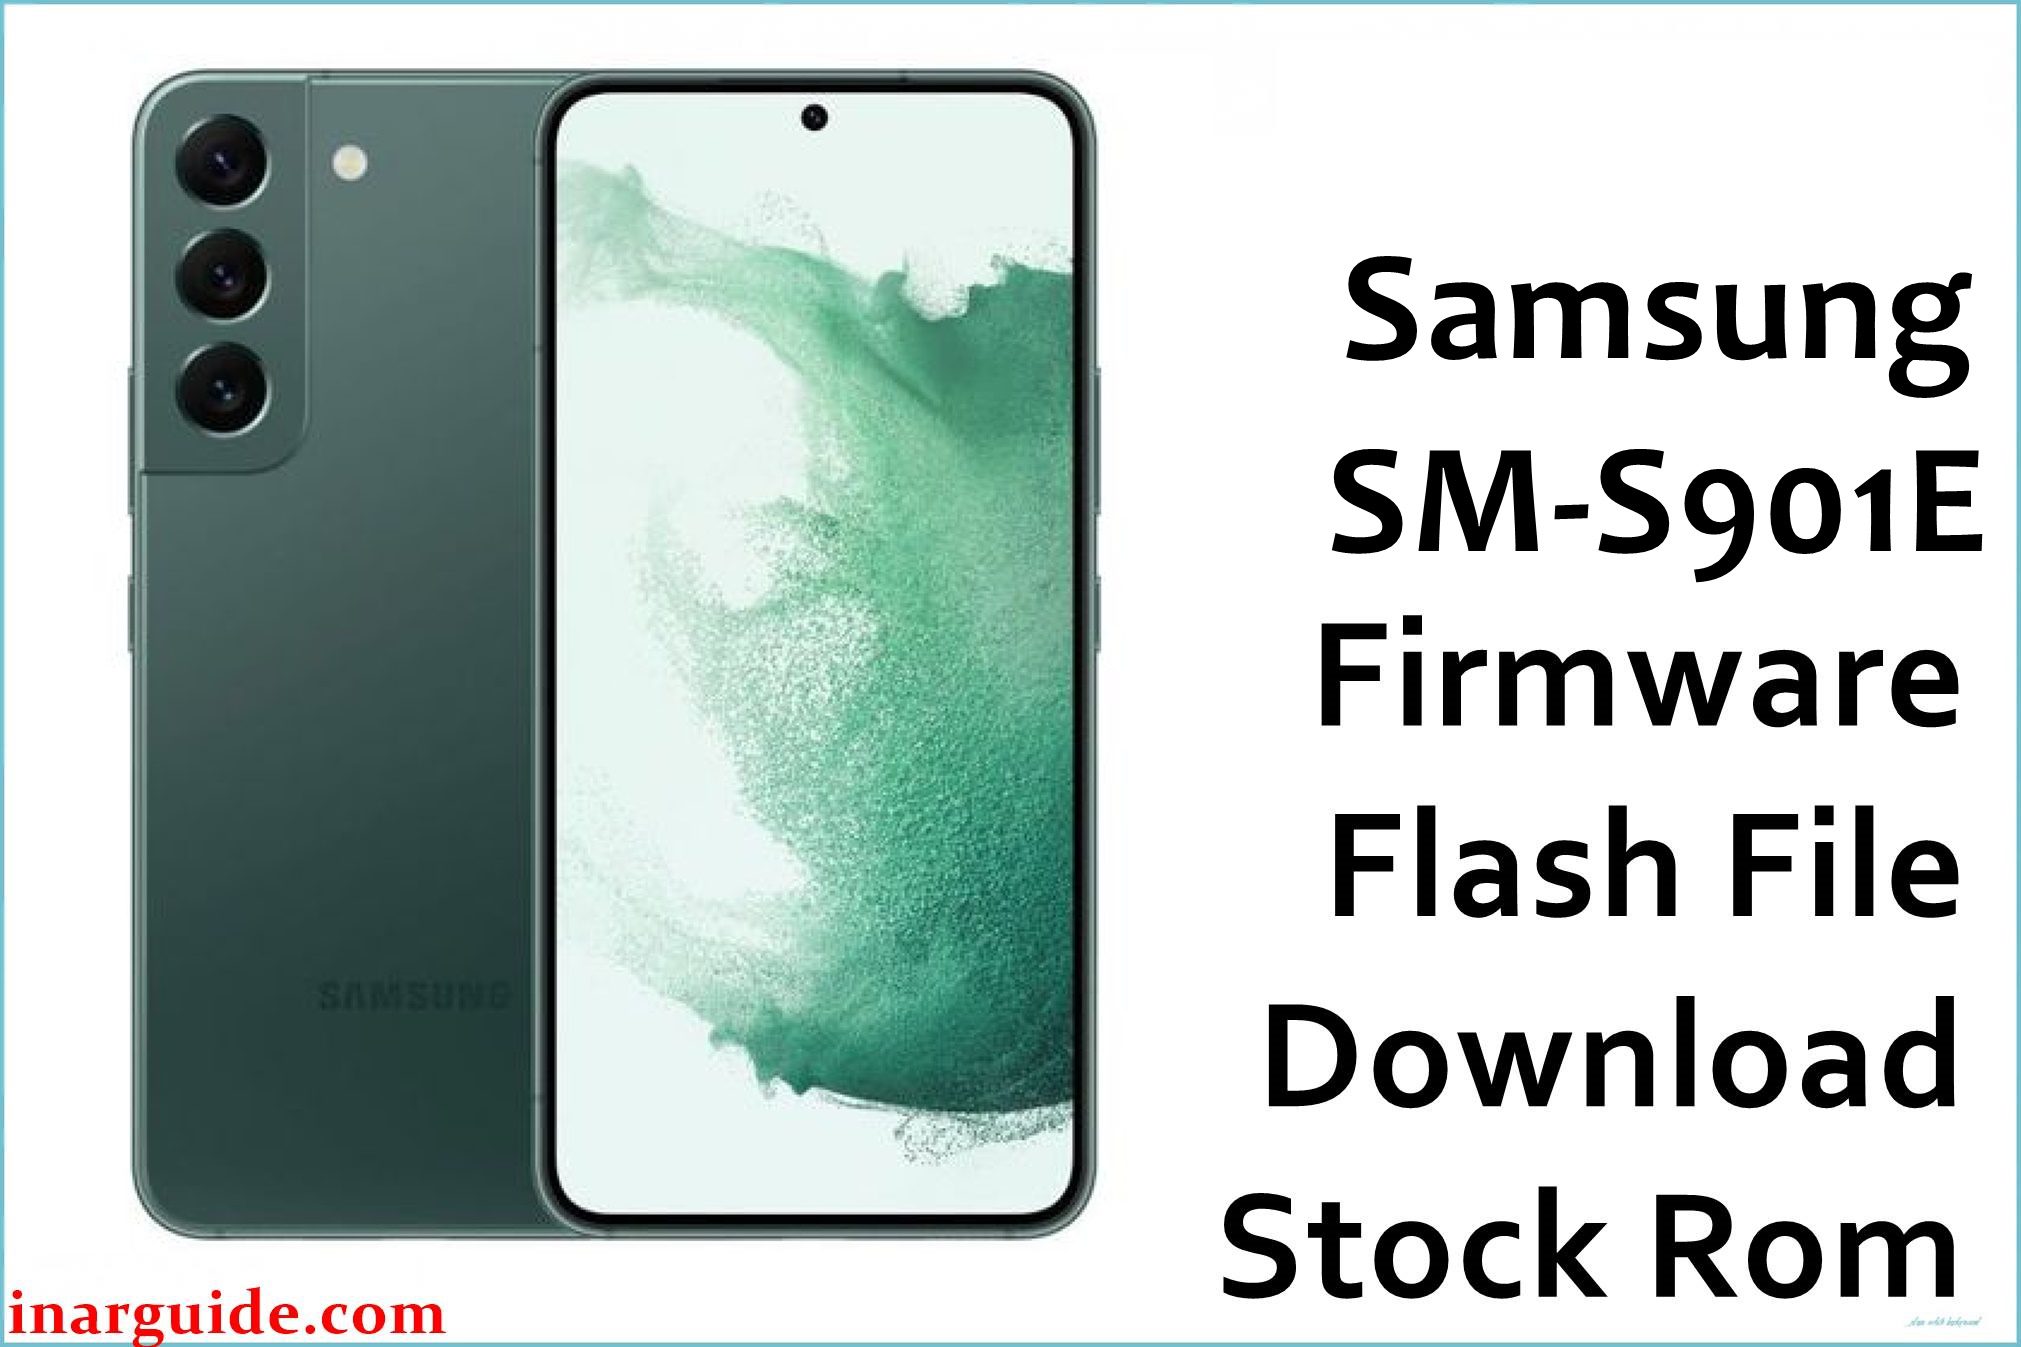 Samsung Galaxy S22 SM-S901E